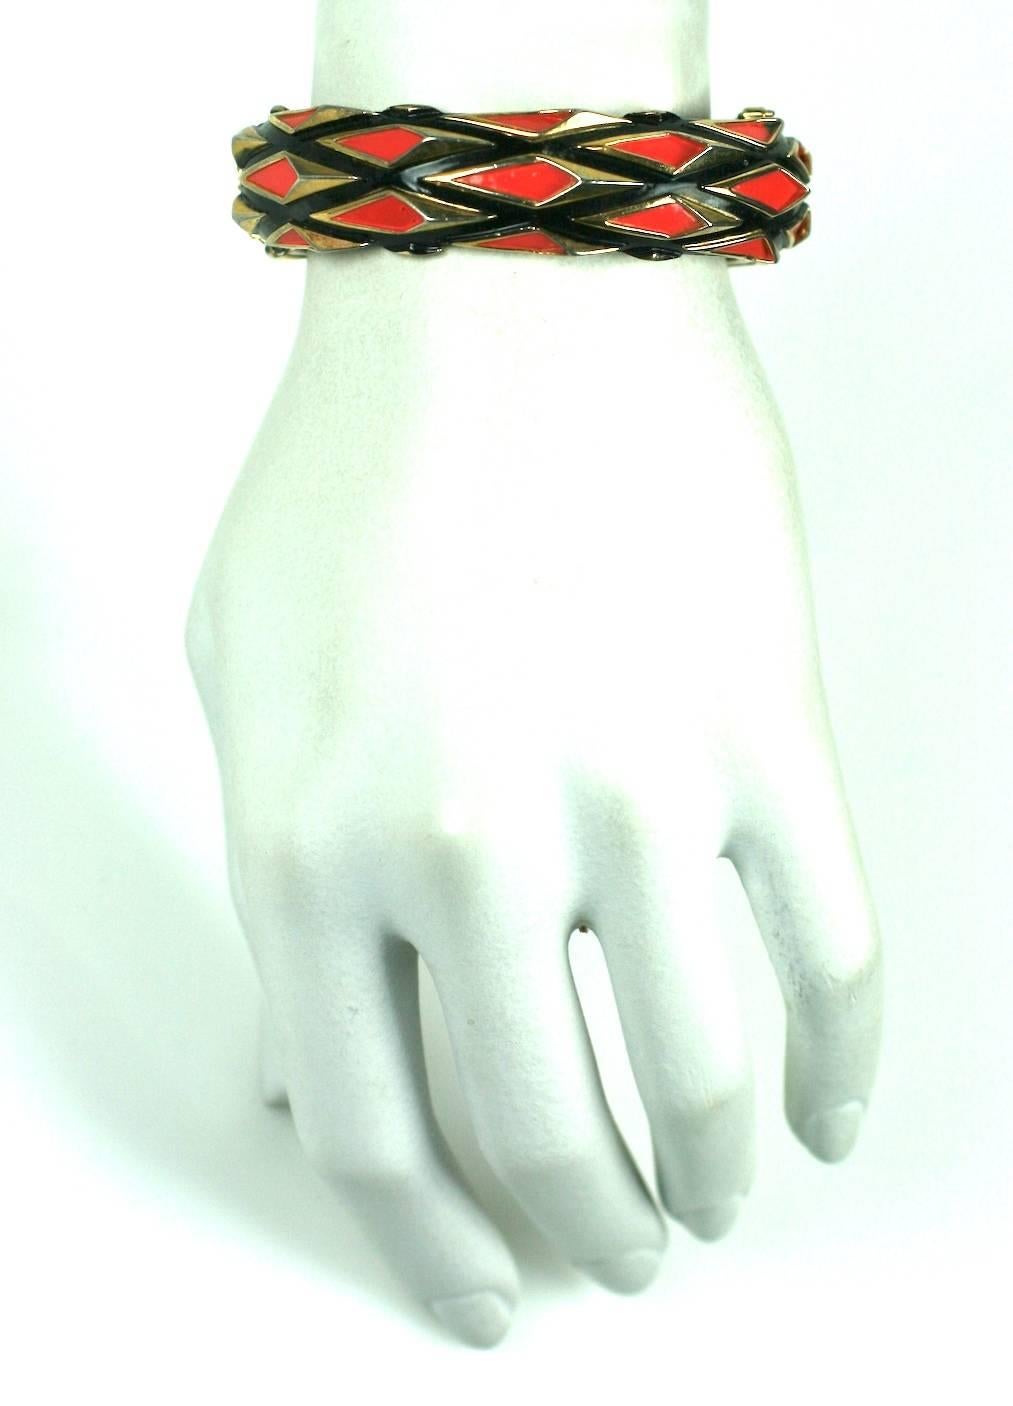 trifari bangle bracelet